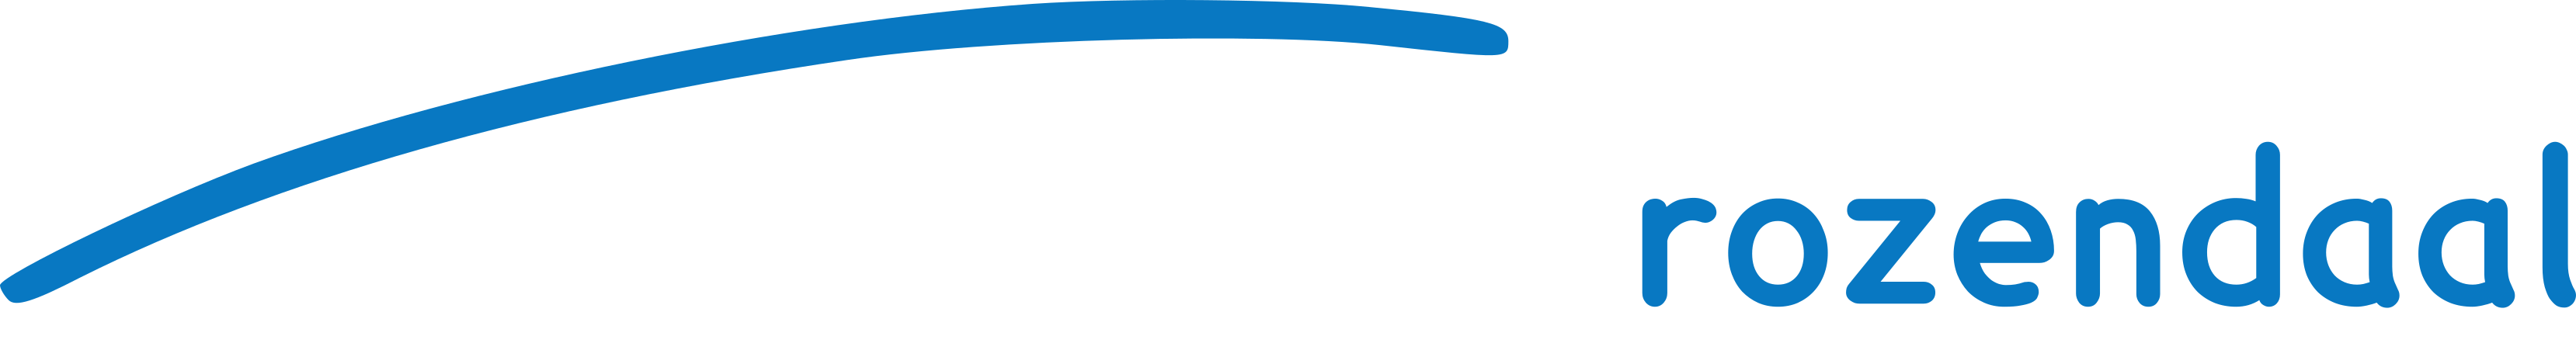 Autobedrijf Rozendaal in Groot-Ammers Logo